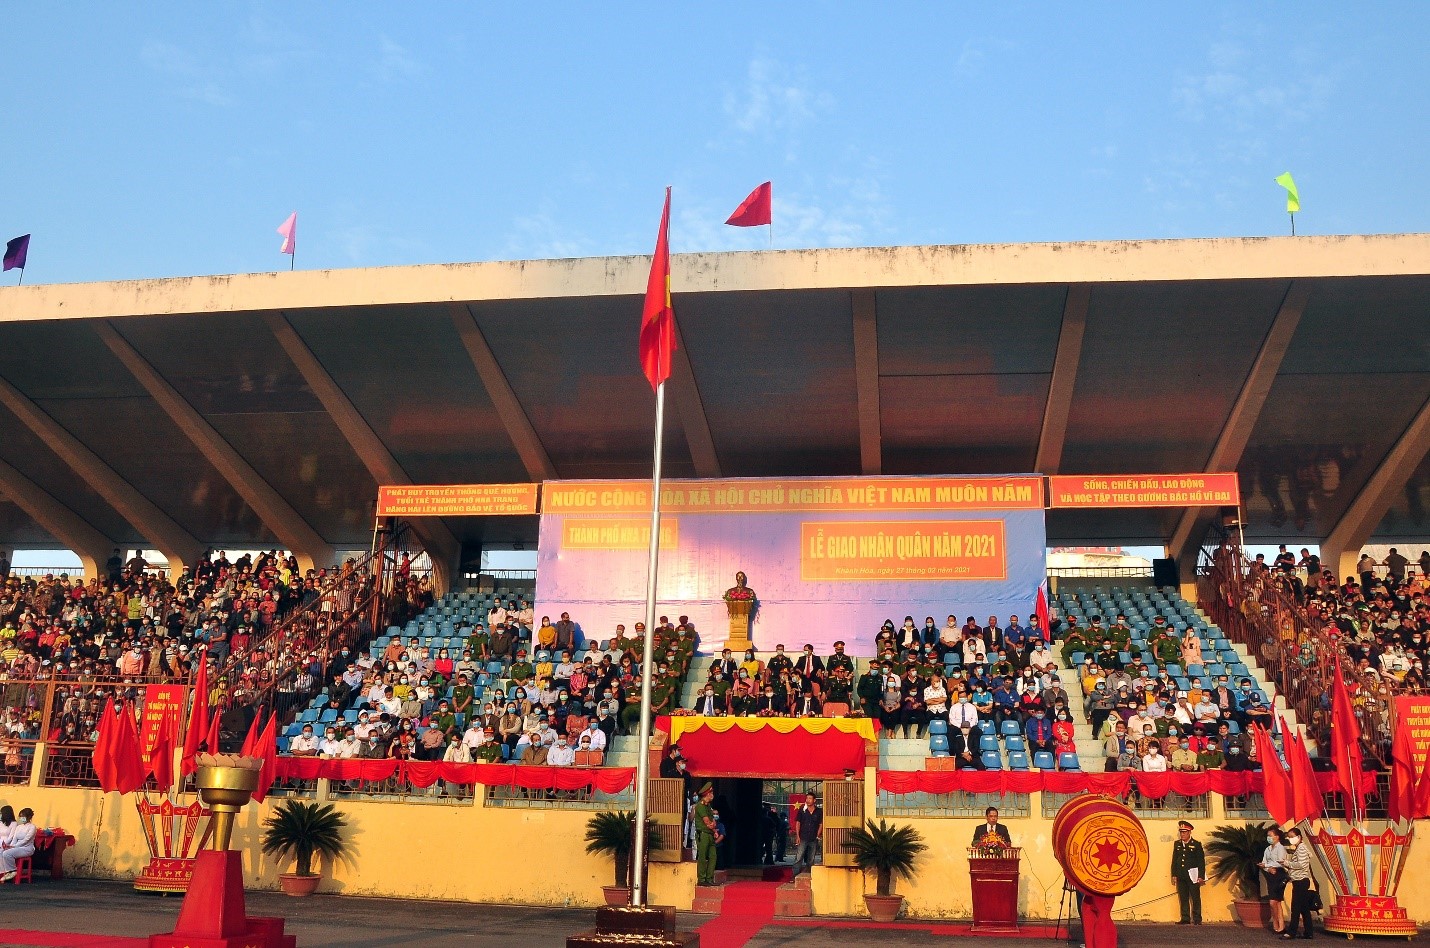 Toàn cảnh buổi Lễ giao quân tại Sân Vận động 19 tháng 8 Nha Trang